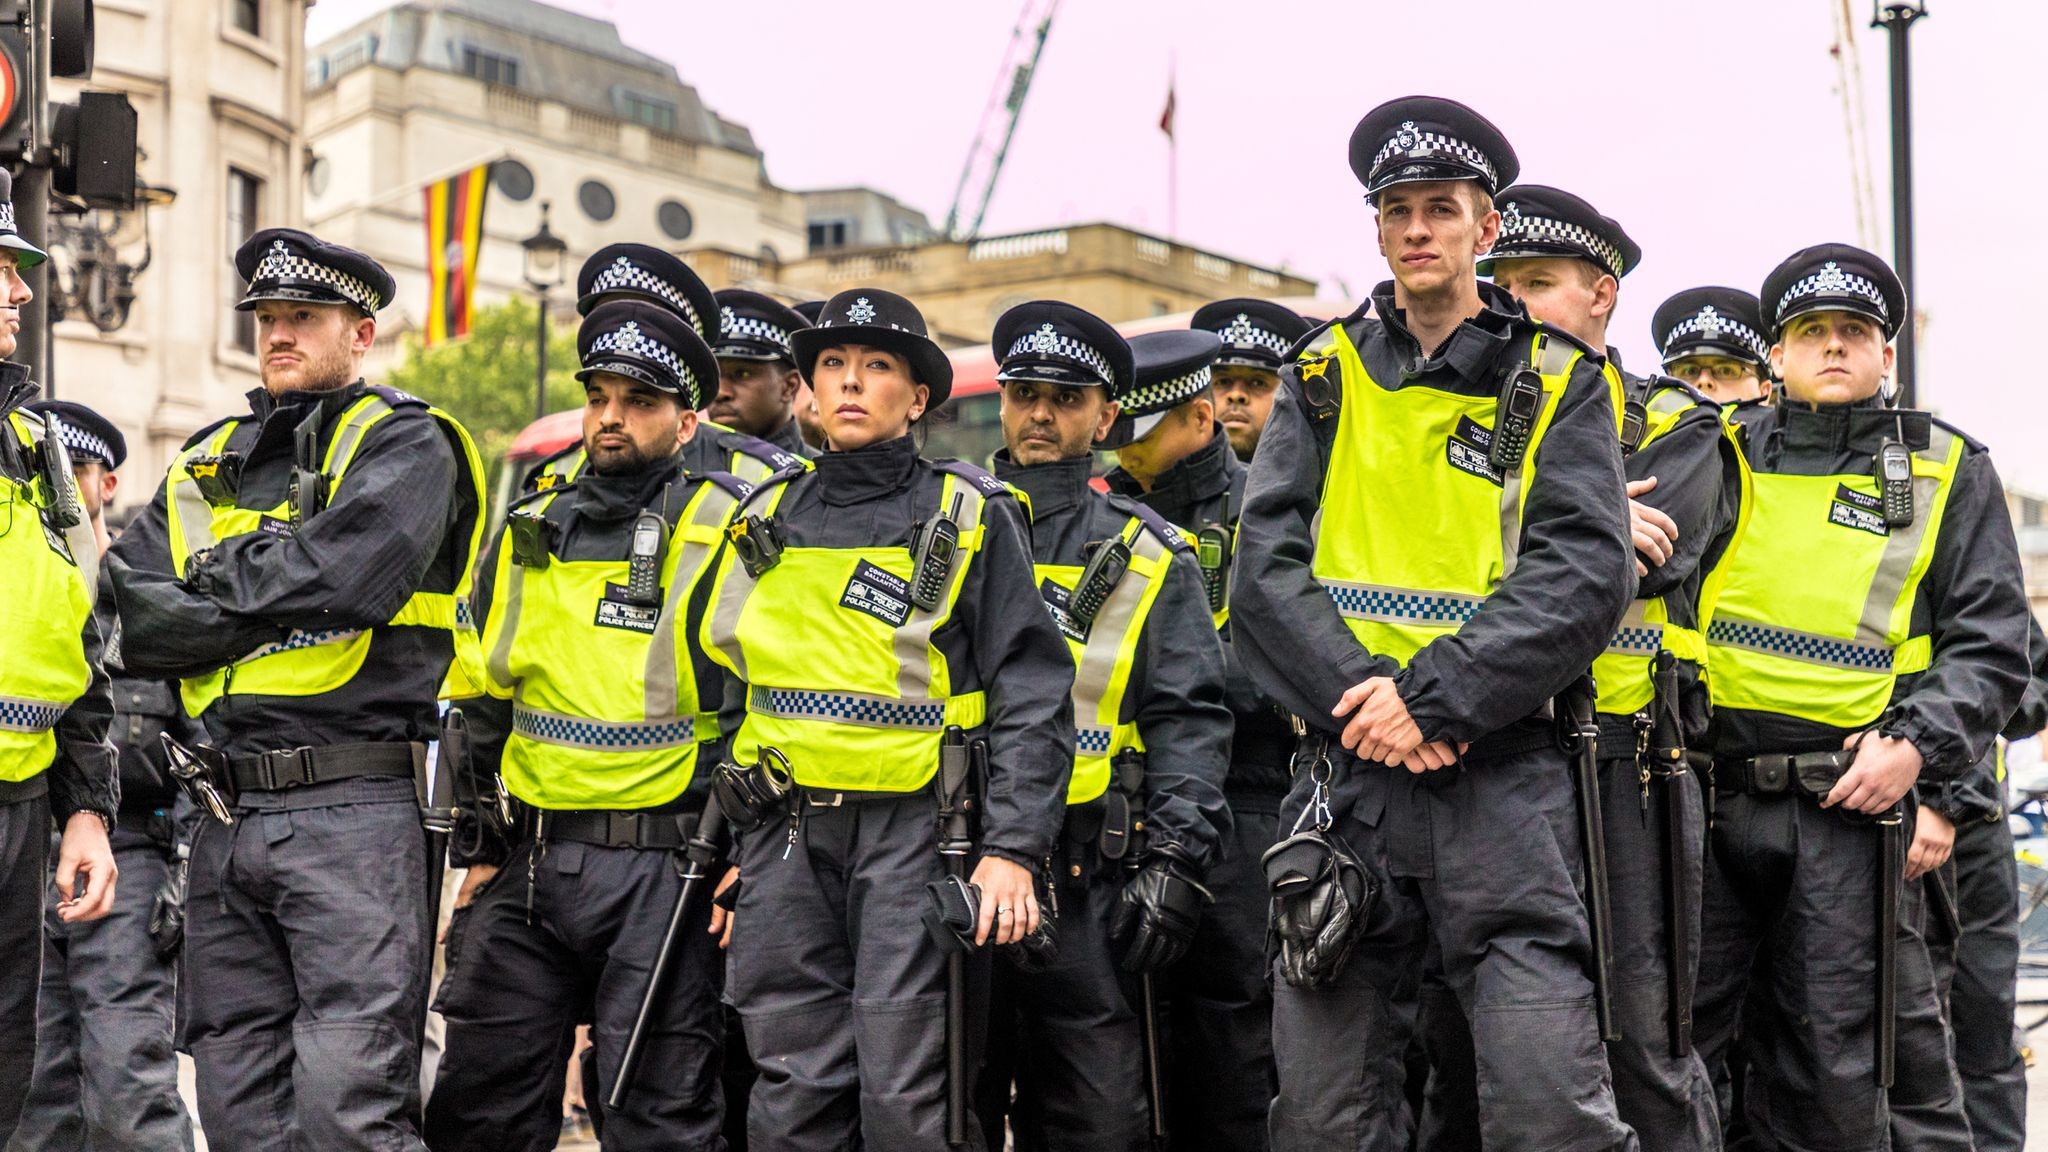 مقتل شرطي بريطاني في لندن .. واعتقال مُطلق النار الذي أصاب نفسه 